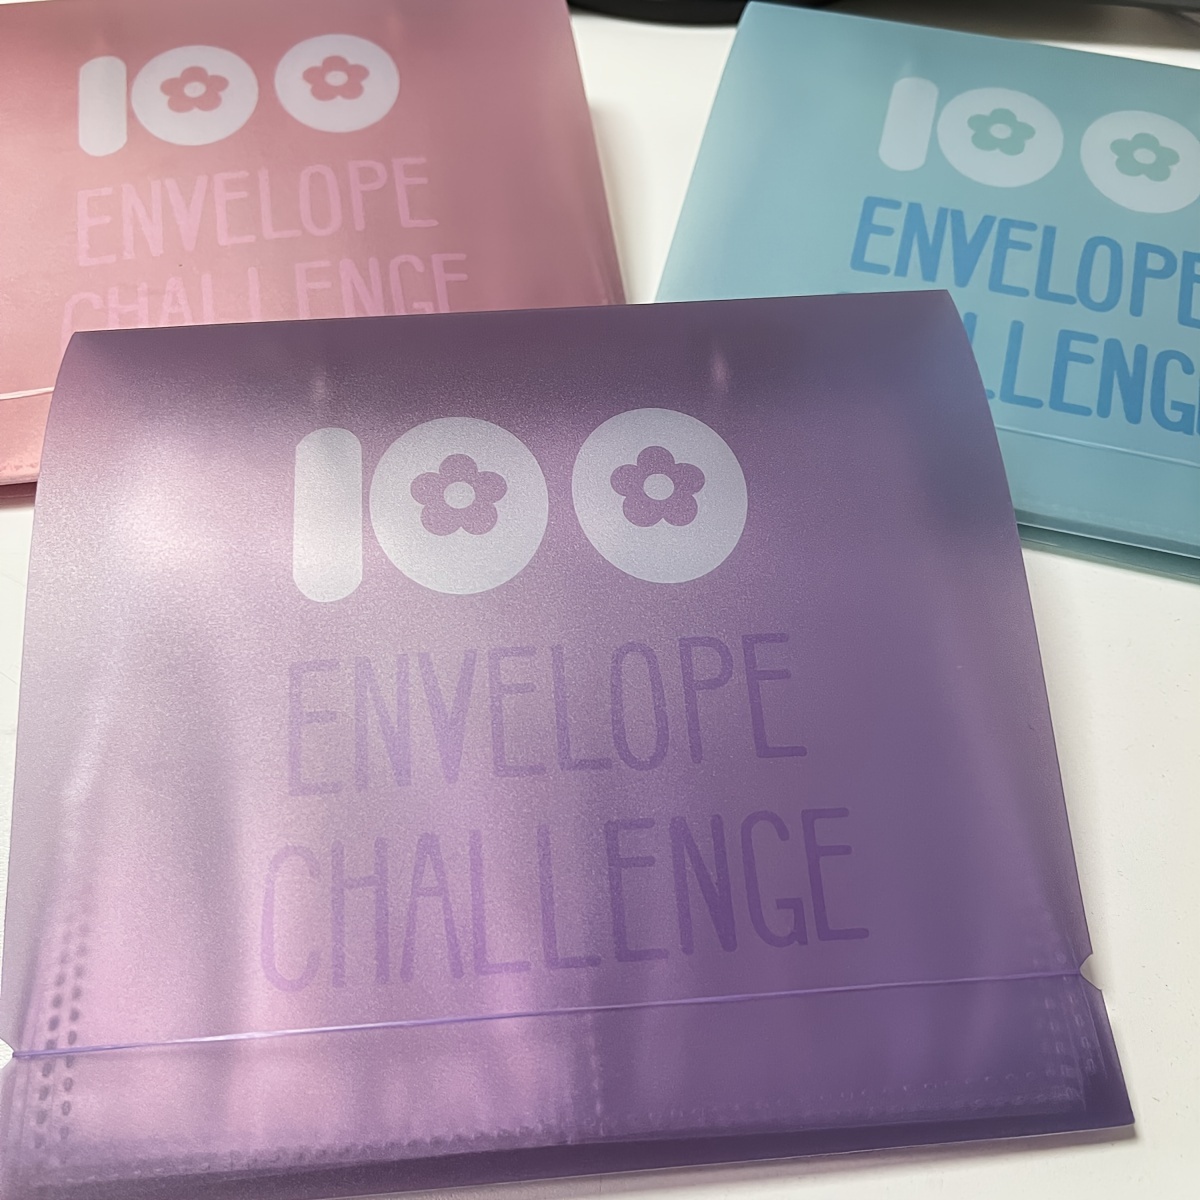 Classeur de défi 100 enveloppes, cartable de nouveaux défis d’épargne 2023,  livre d’épargne avec enveloppes de caisse, moyen facile et amusant